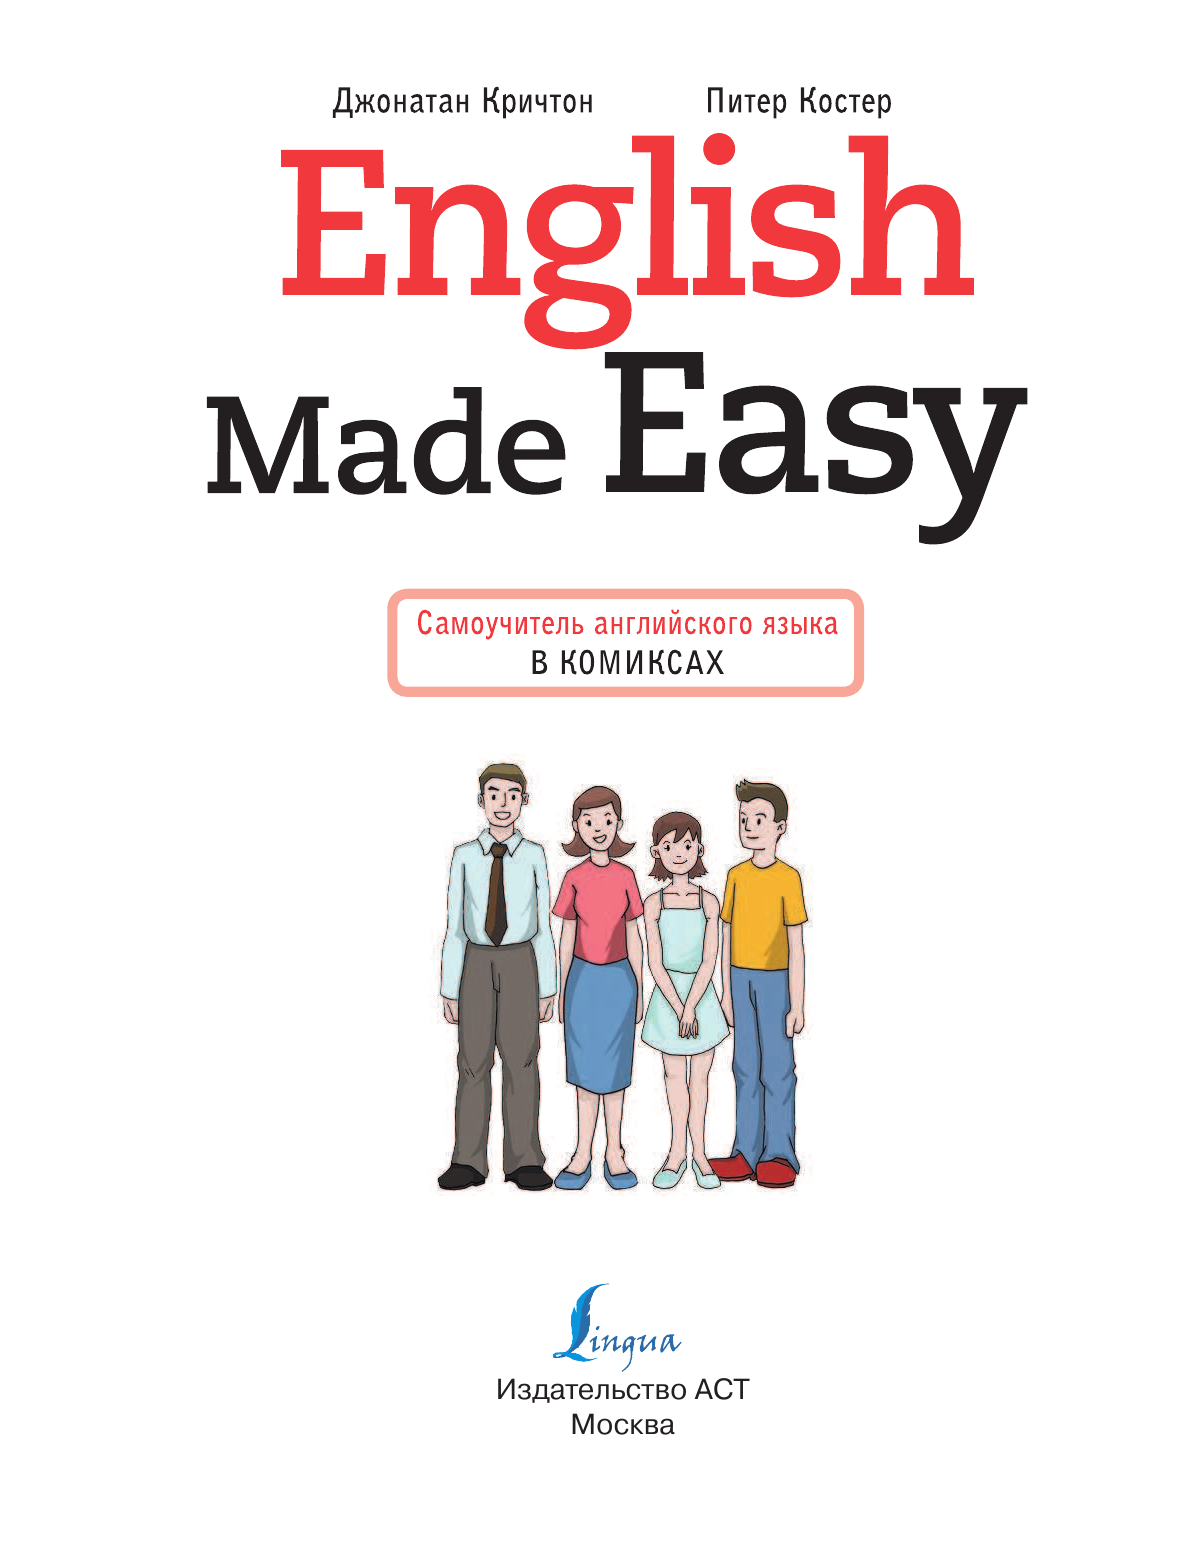 Кричтон Джонатан English Made Easy: Самоучитель английского языка в комиксах - страница 2